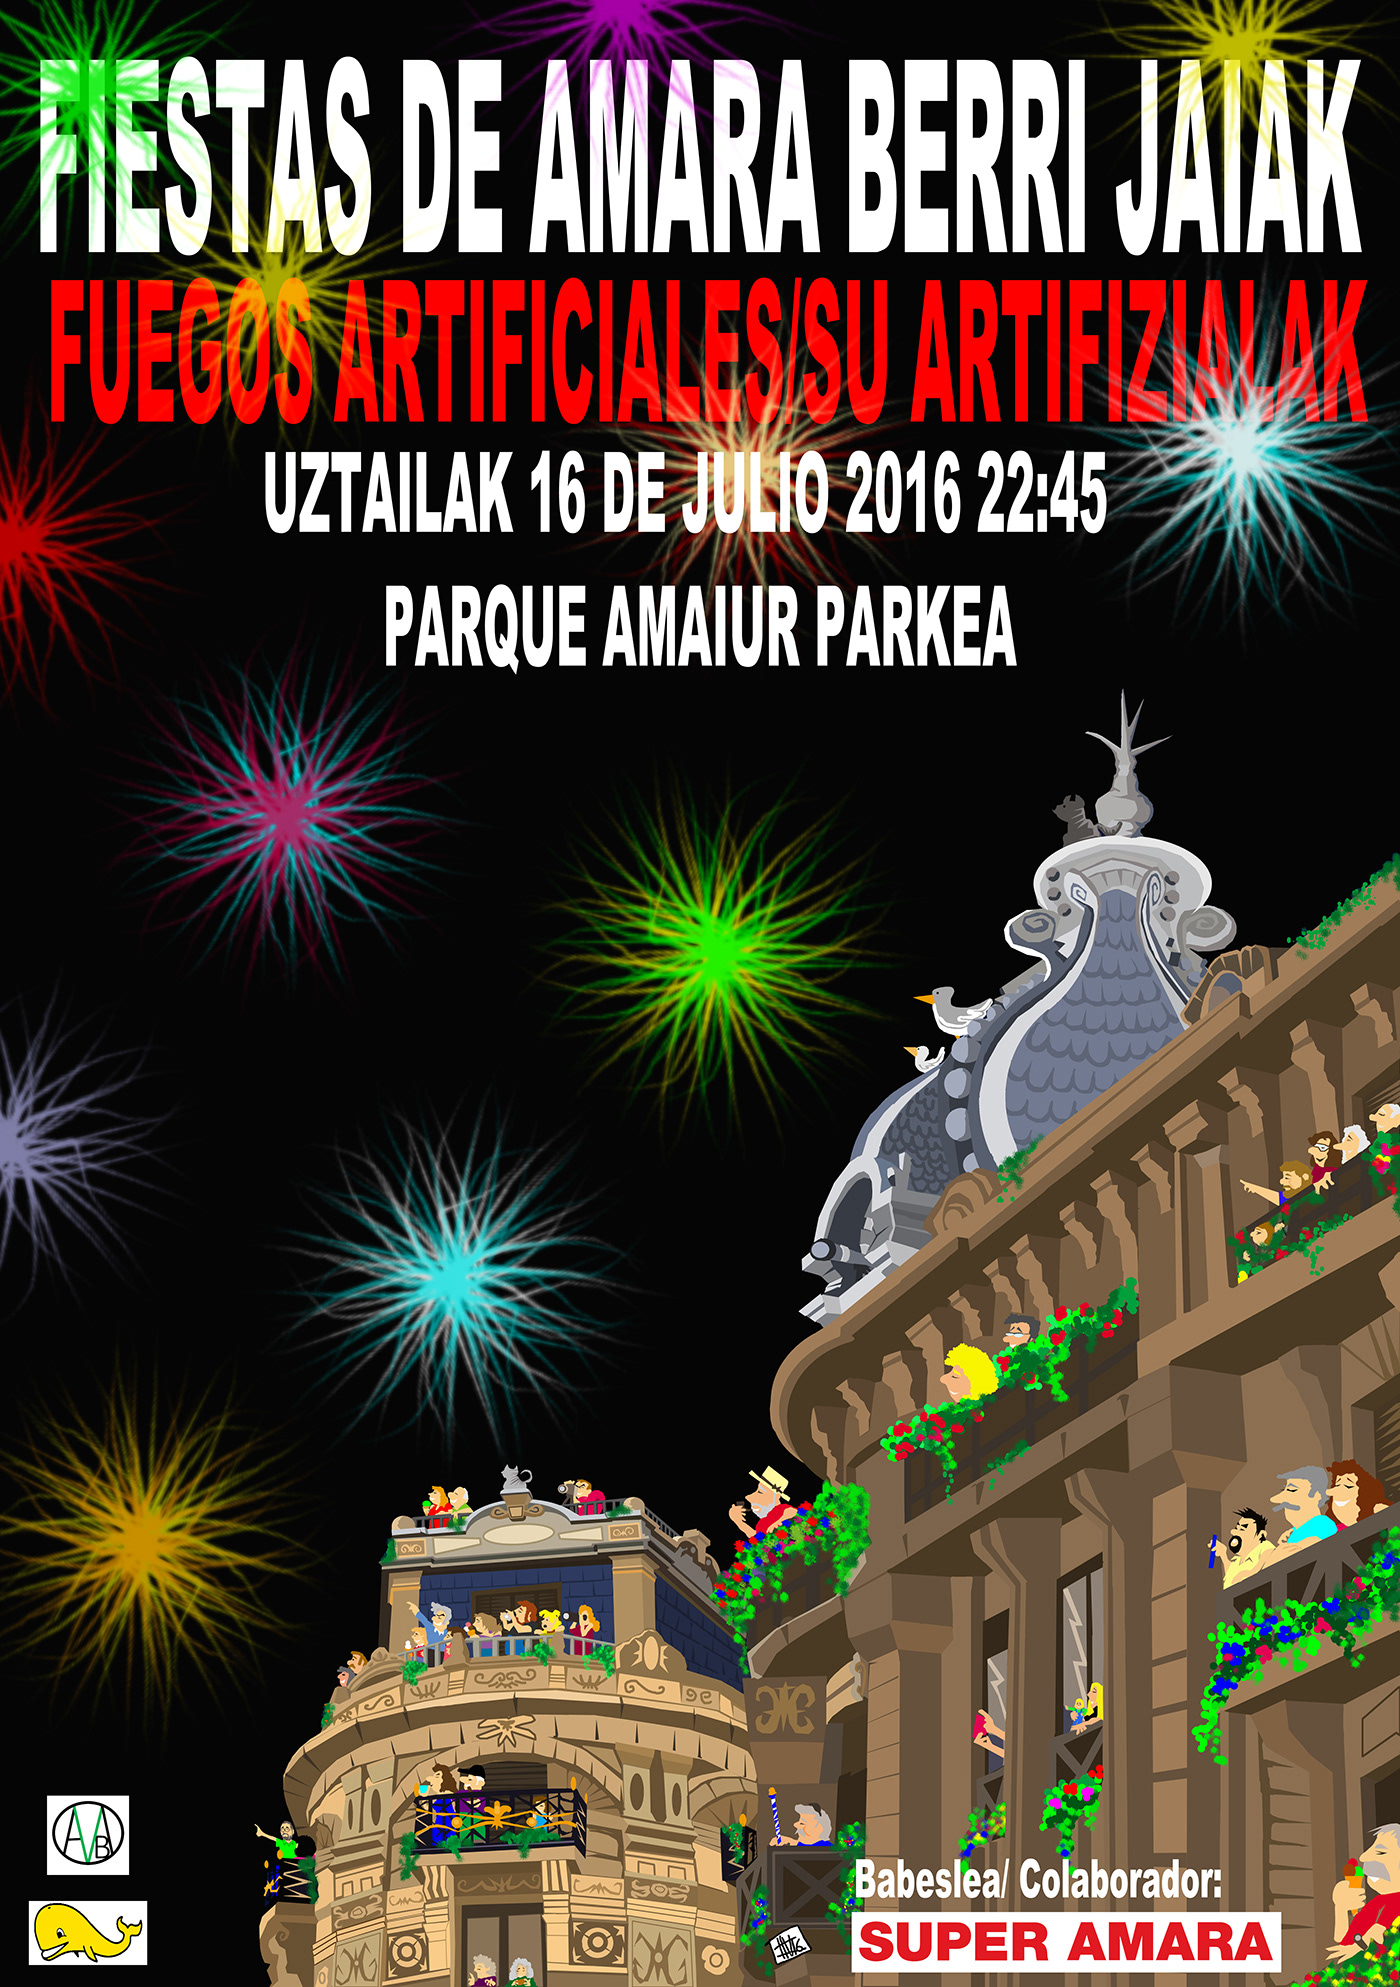 night awarded poster fiestas cartel donostia Digital Art  digital illustration Original Unique